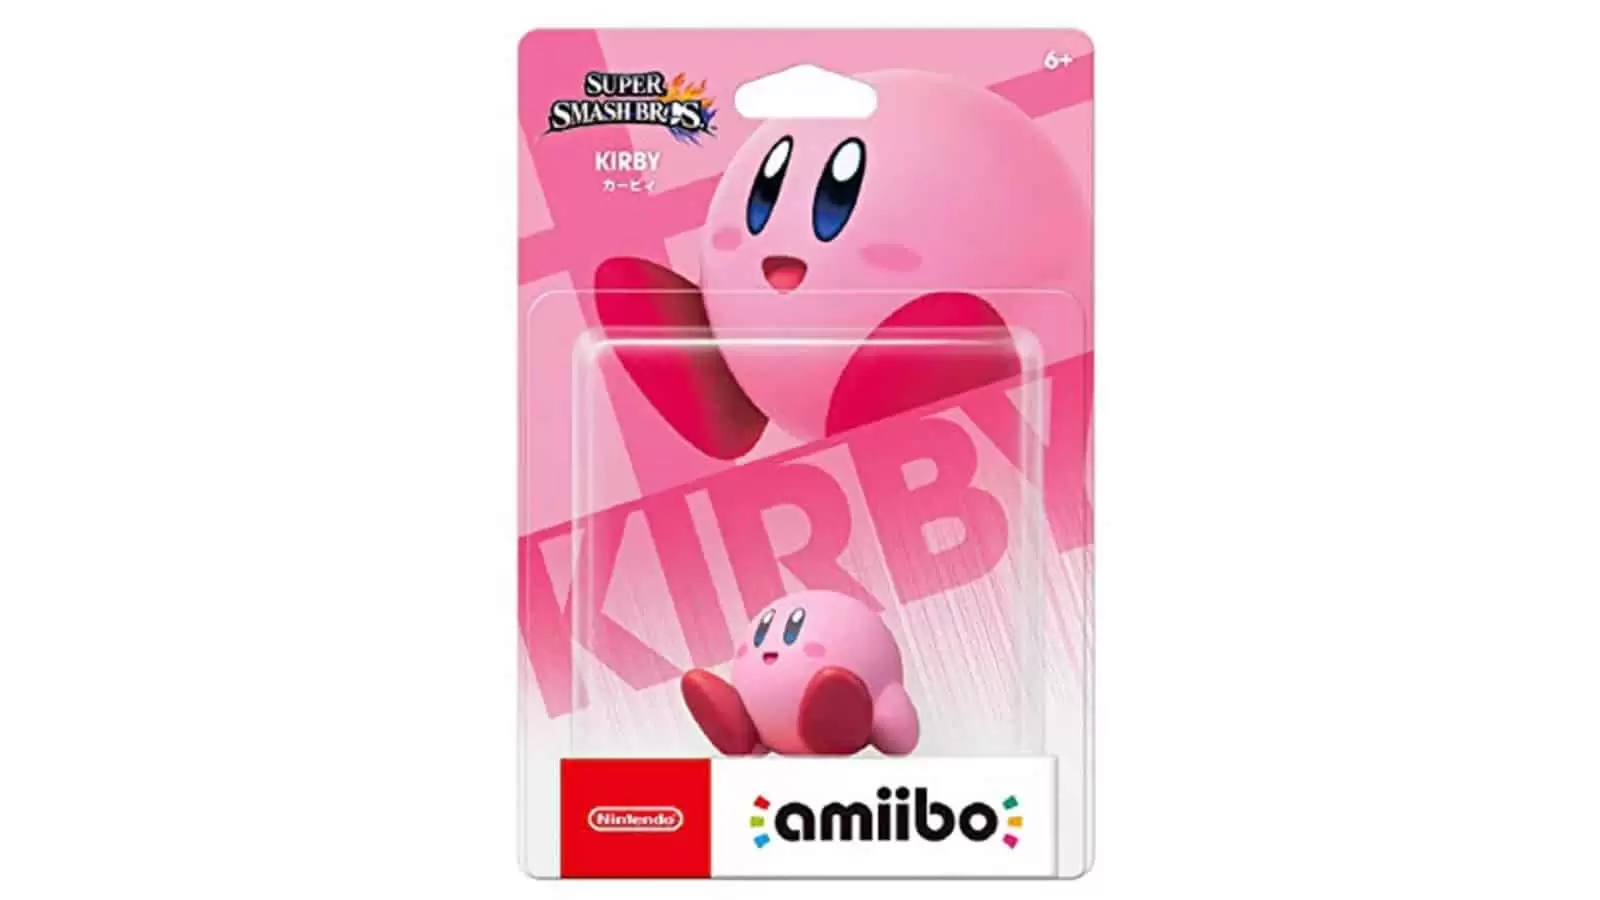 אמיבו – Kirby (סדרת Super Smash Bros.) תמונה 2